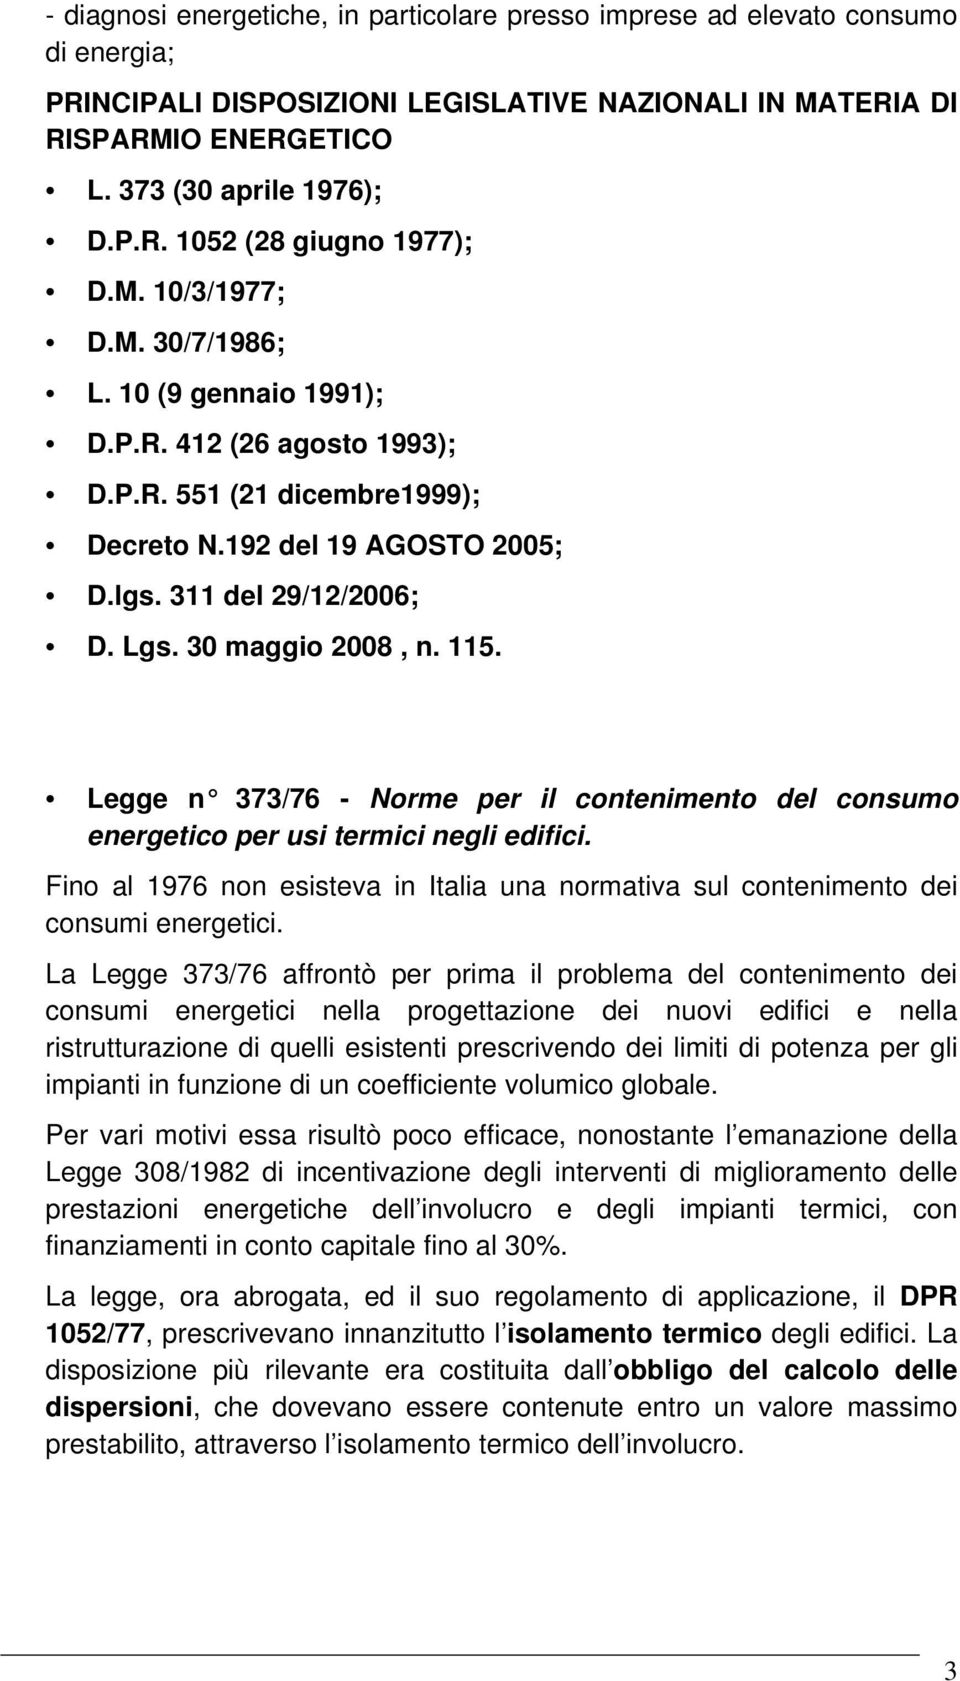 115. Legge n 373/76 - Norme per il contenimento del consumo energetico per usi termici negli edifici. Fino al 1976 non esisteva in Italia una normativa sul contenimento dei consumi energetici.